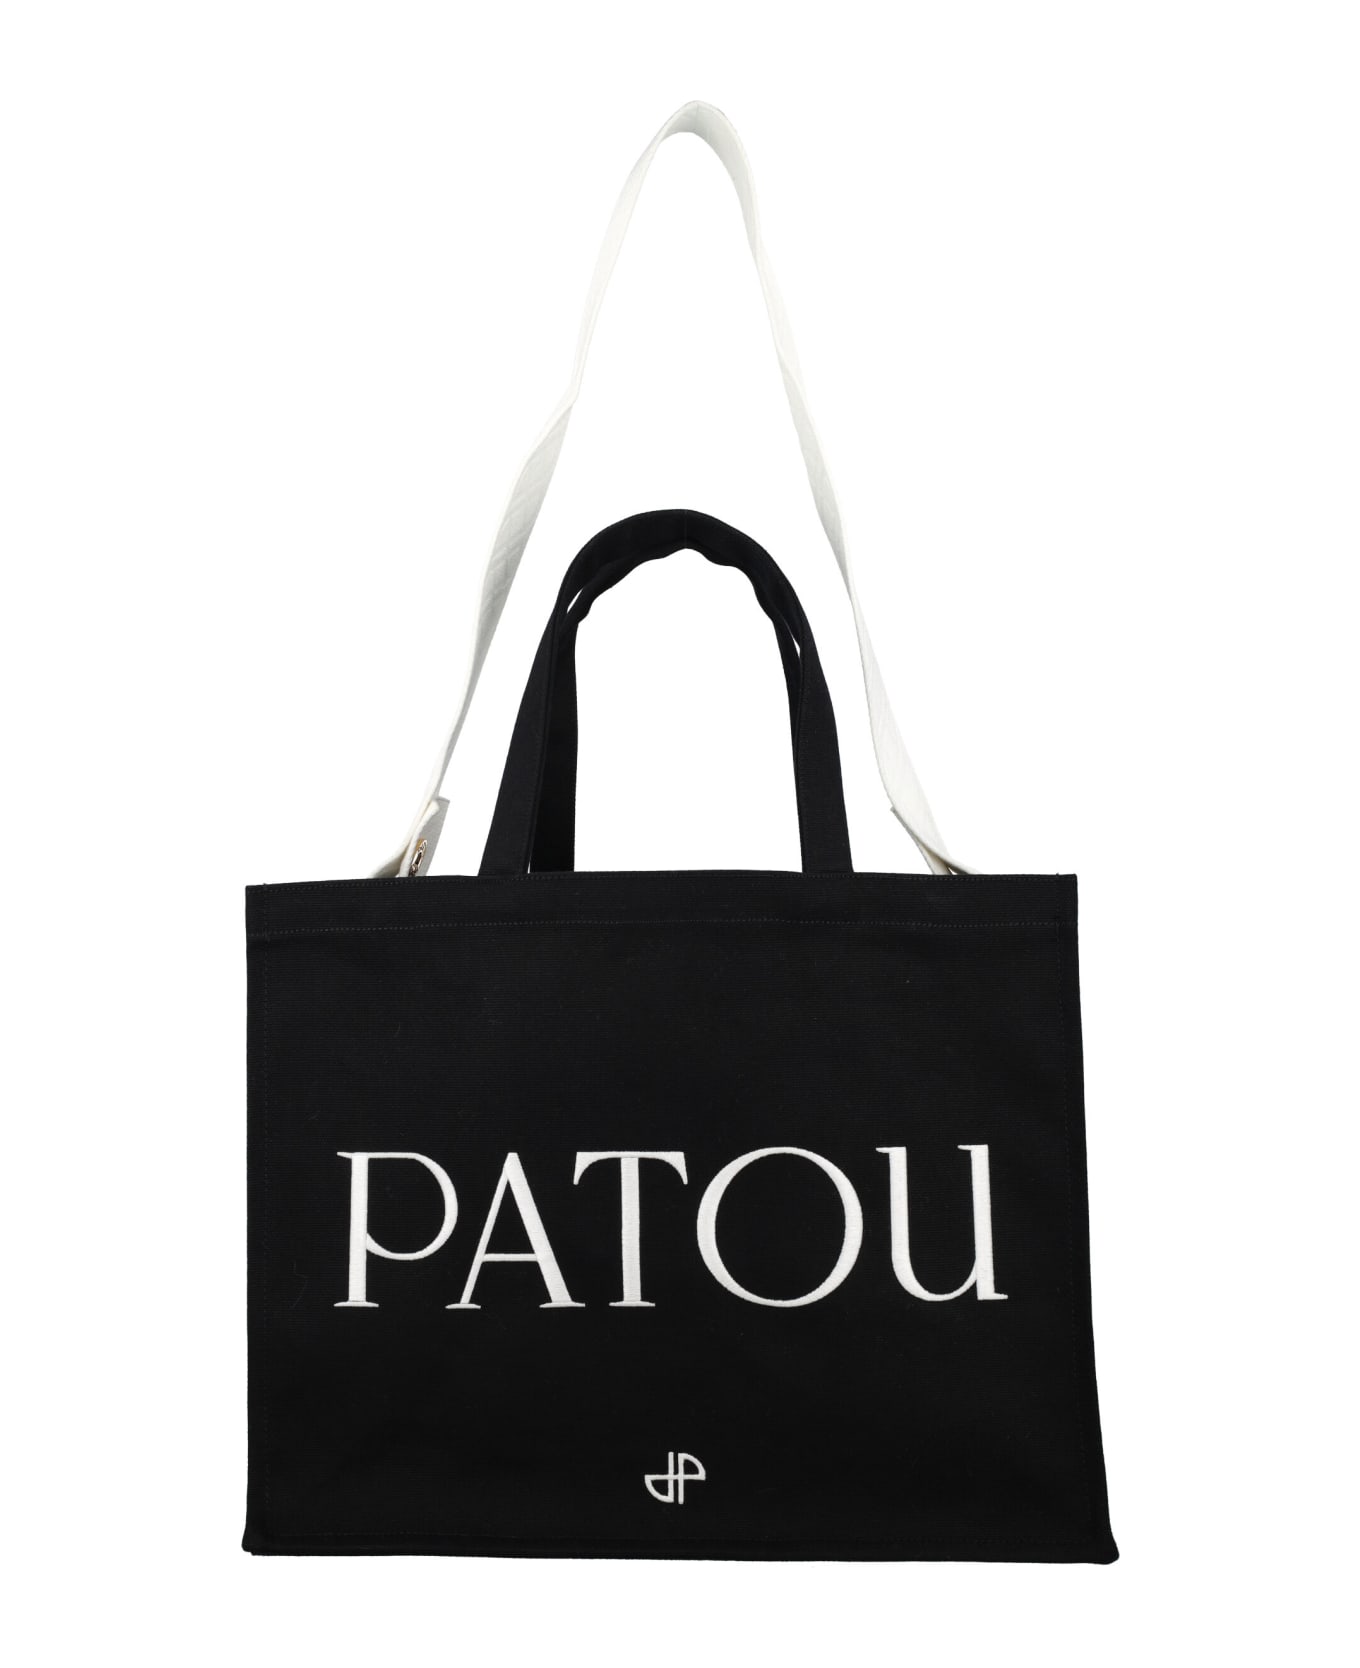 Patou Logo Tote - BLACK